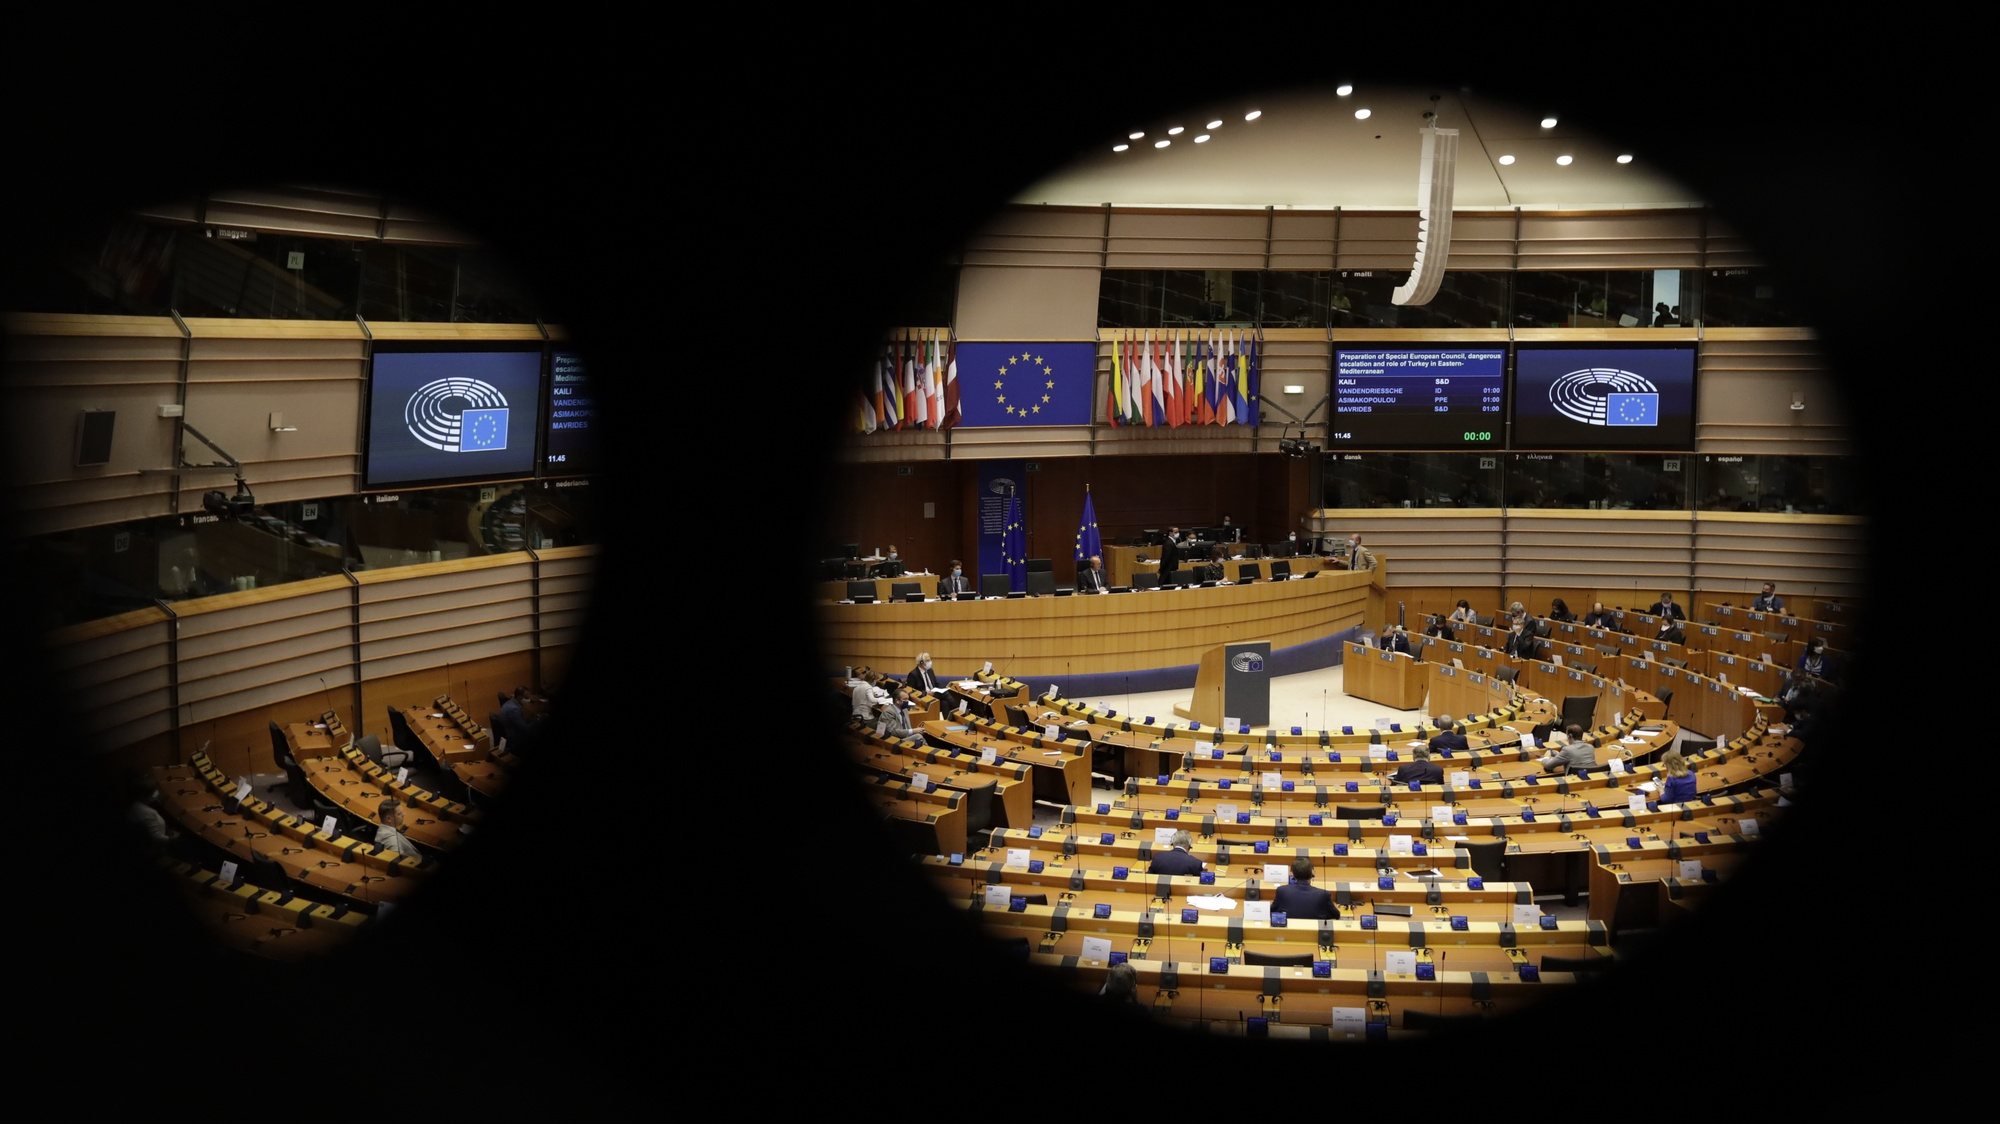 Vista geral durante uma sessão plenária no Parlamento Europeu